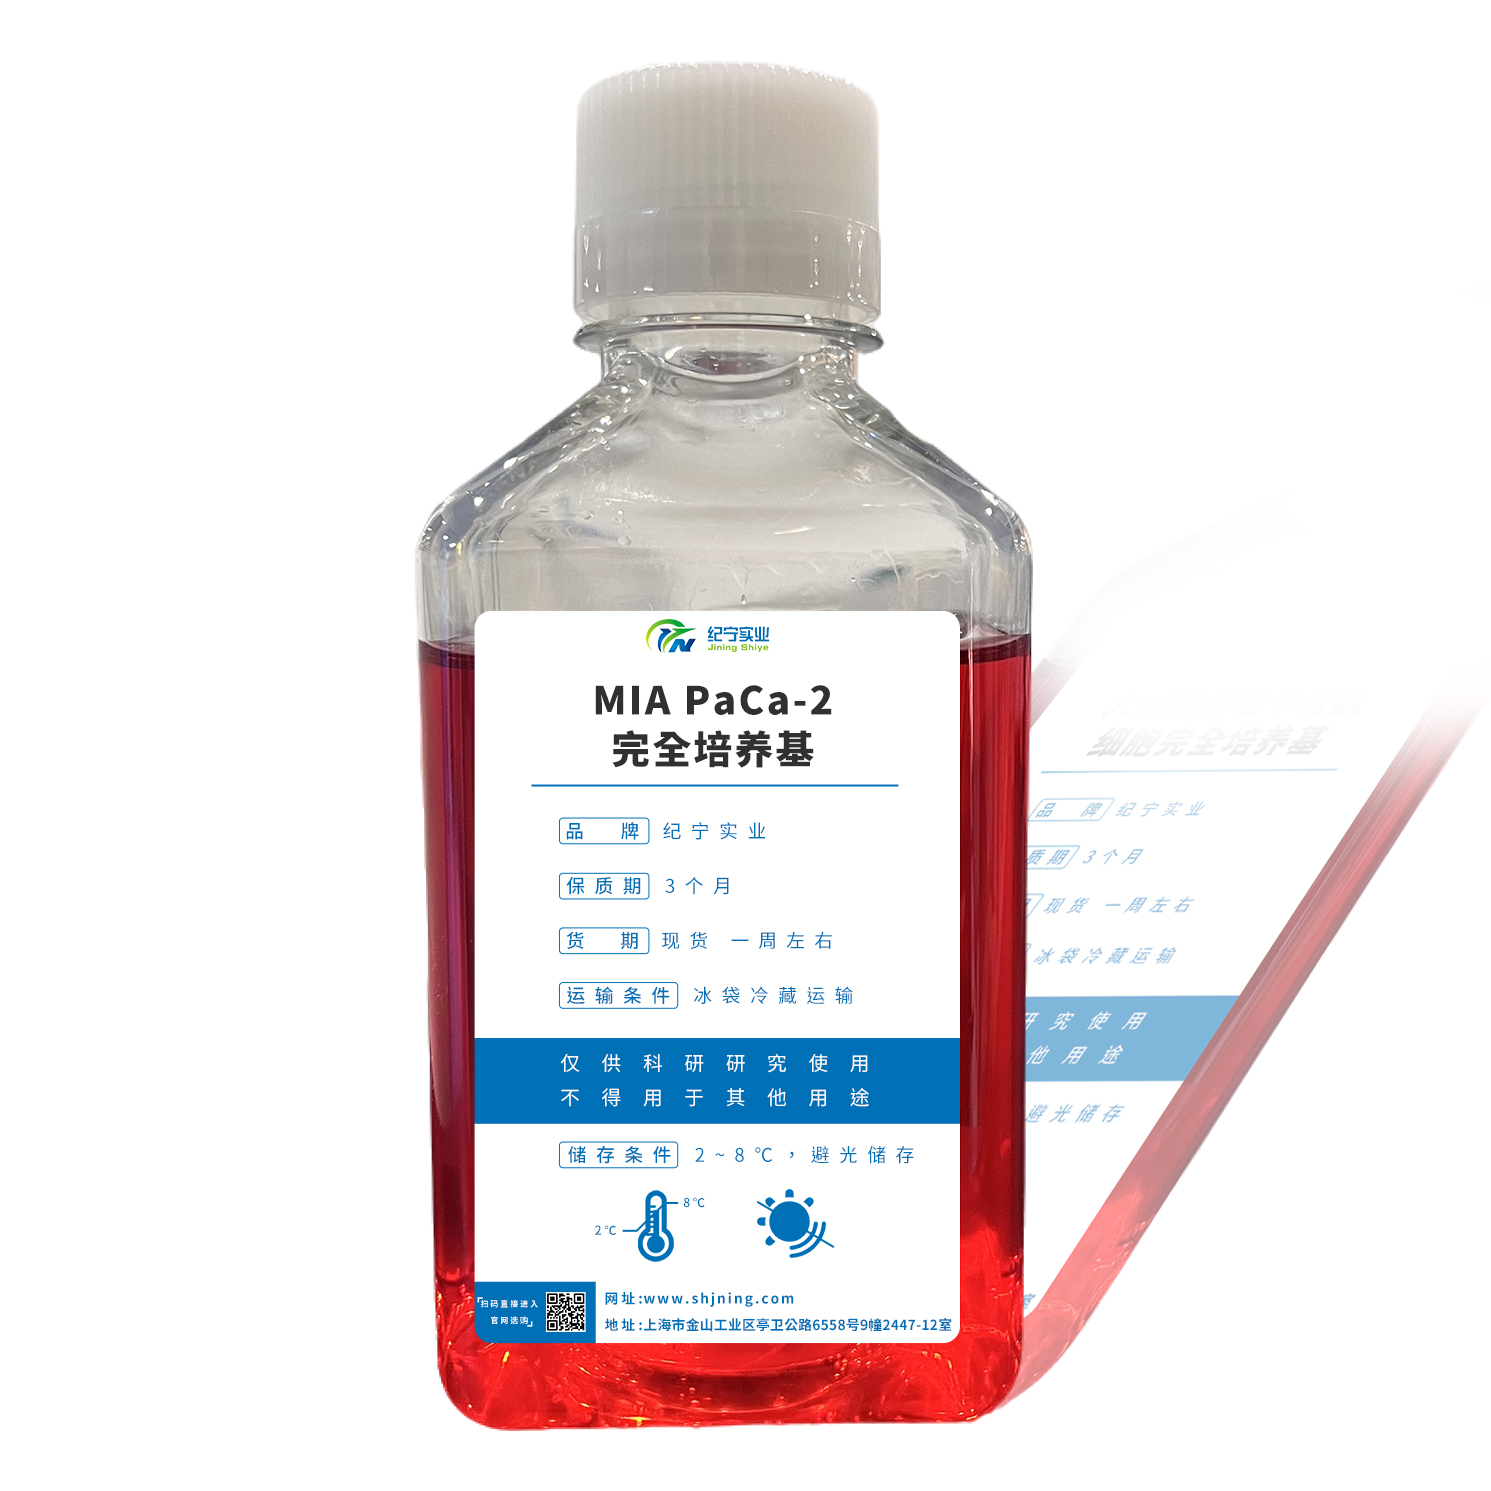 MIA PaCa-2完全培养基